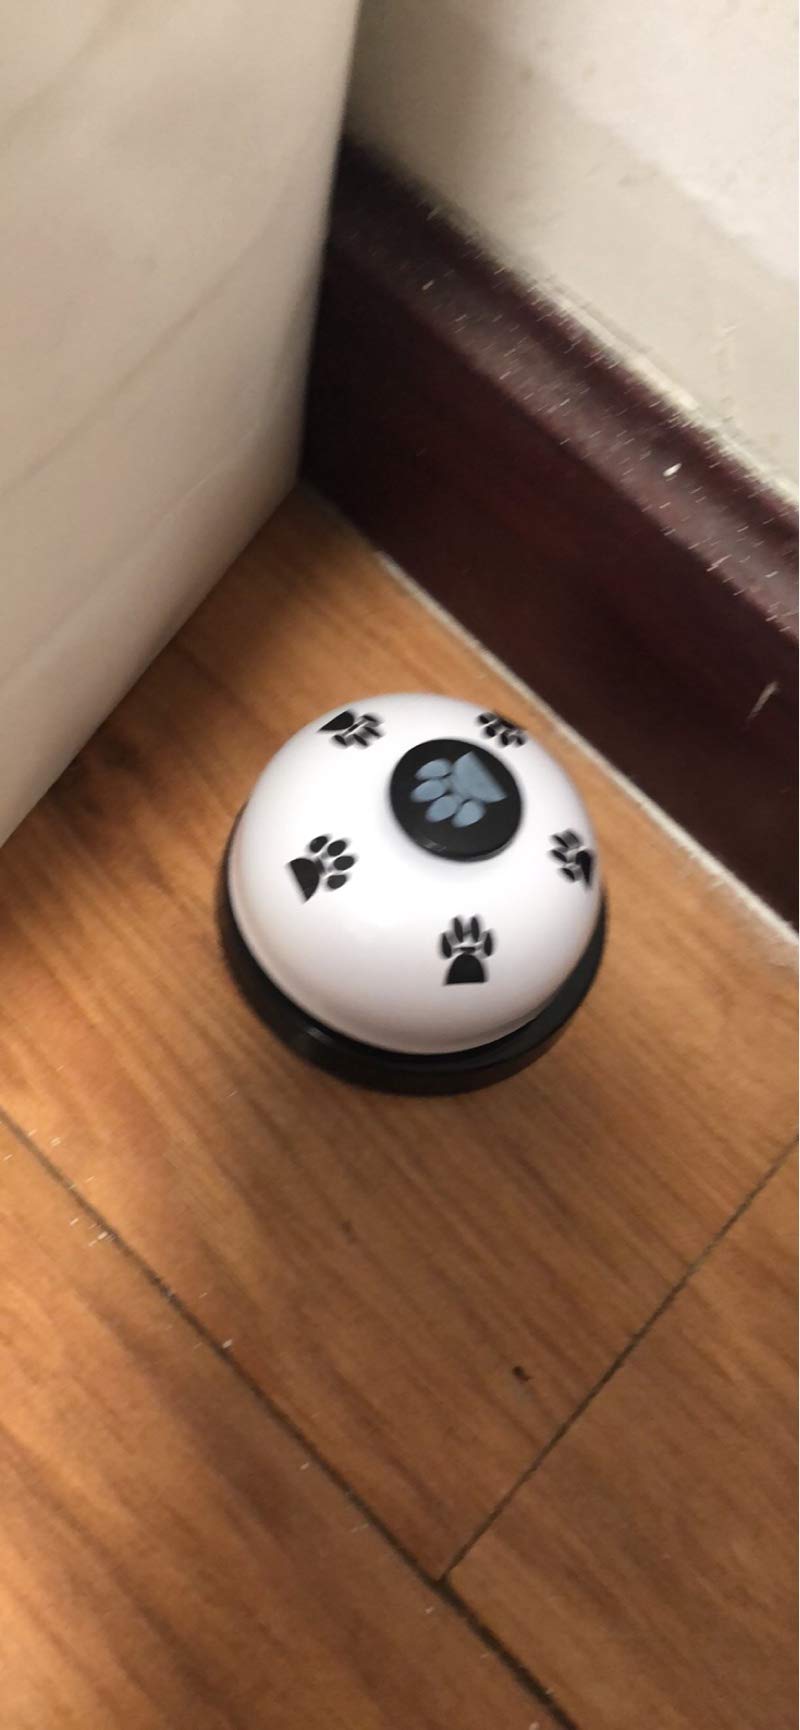 [Australia] - Dog Training Bell for Feeding Home Training Doorbell 